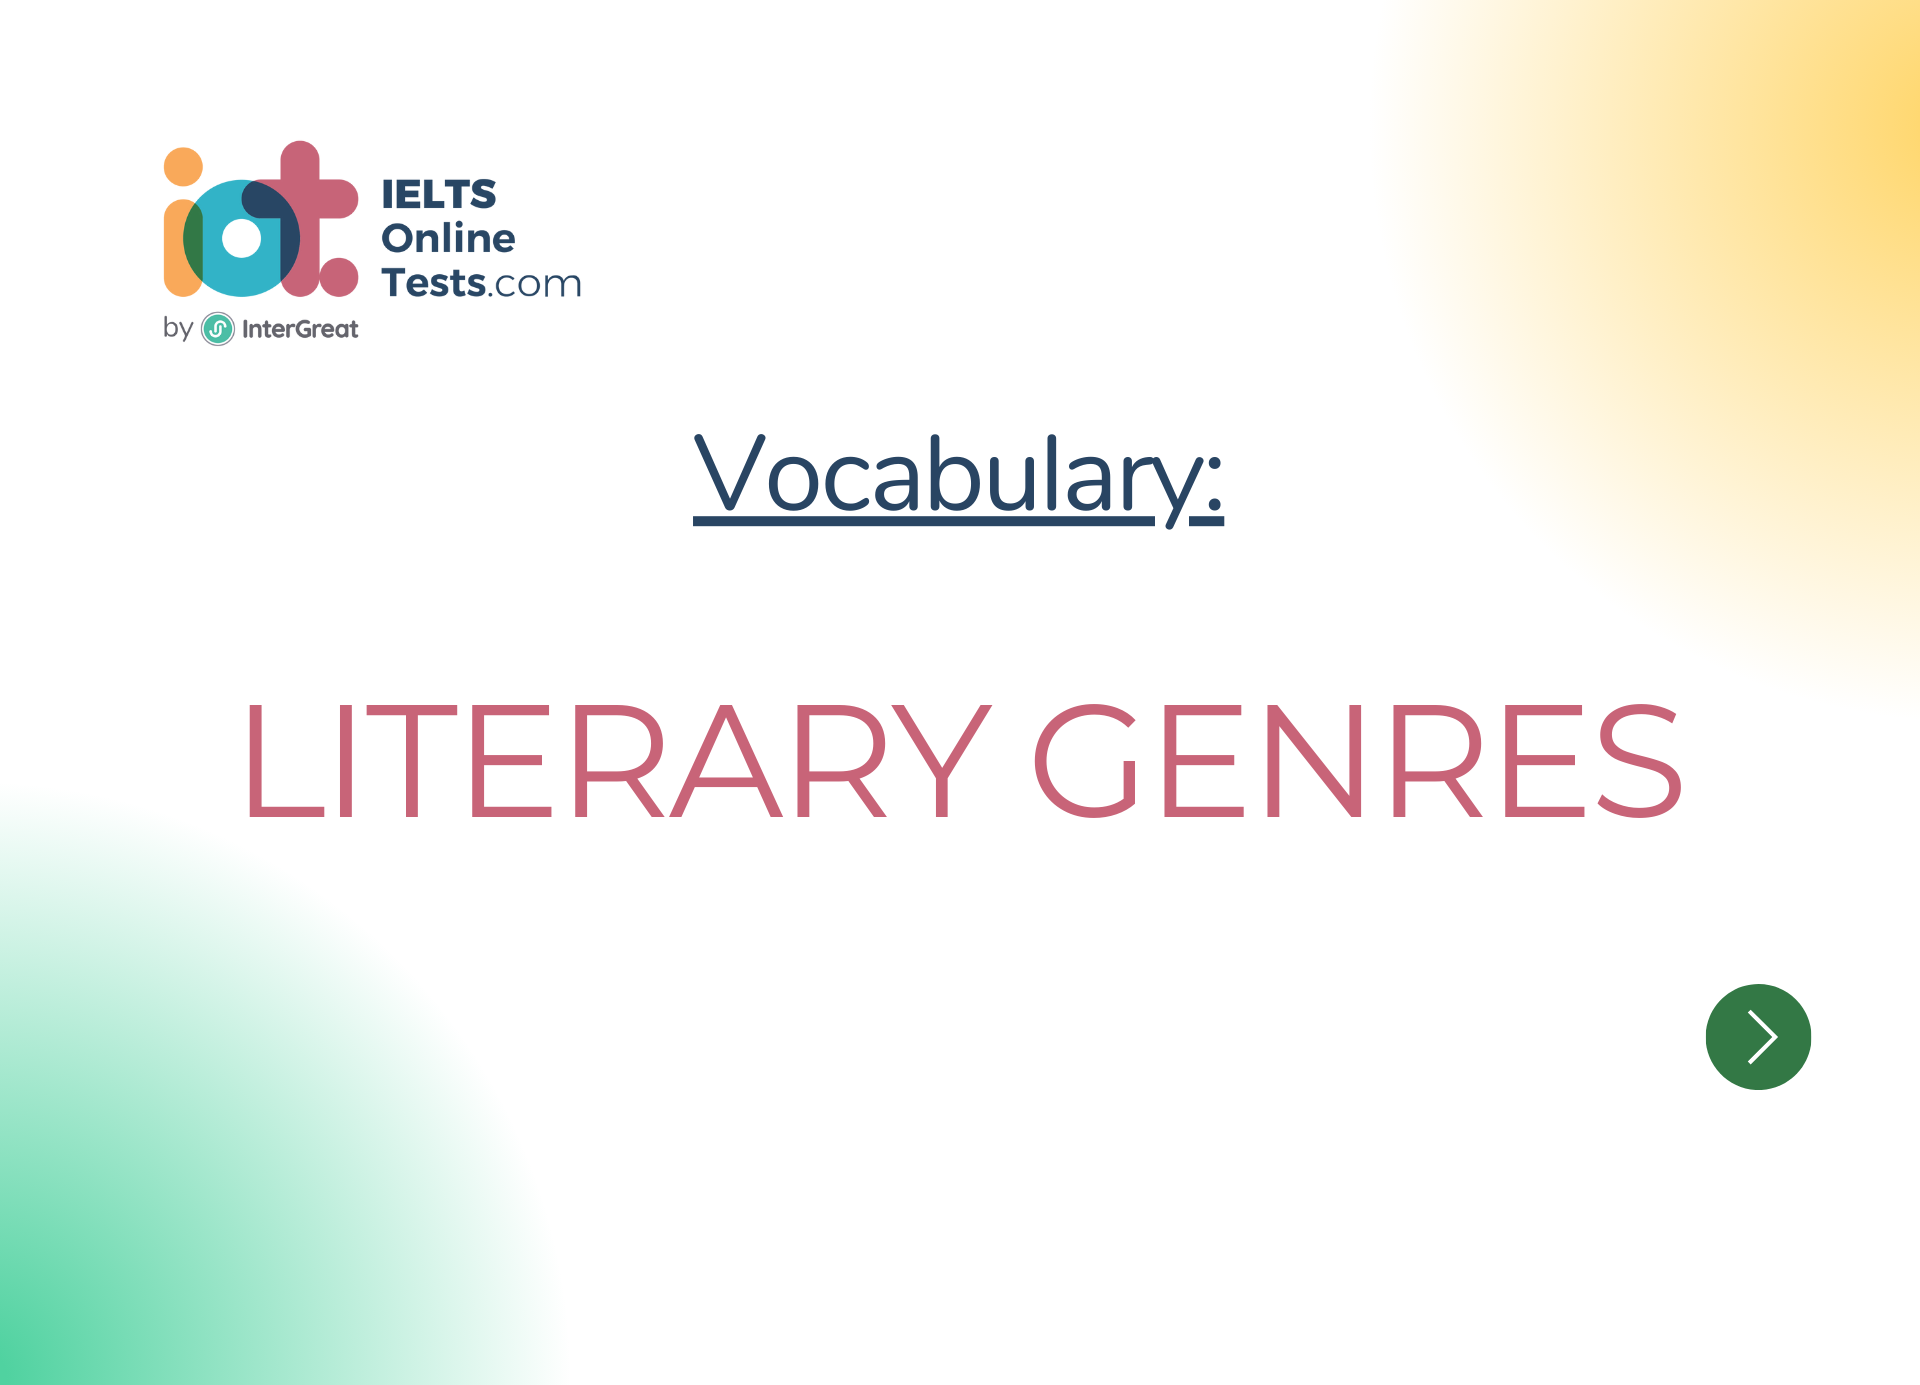 Các chuyên mục văn học tập (Literary genres)